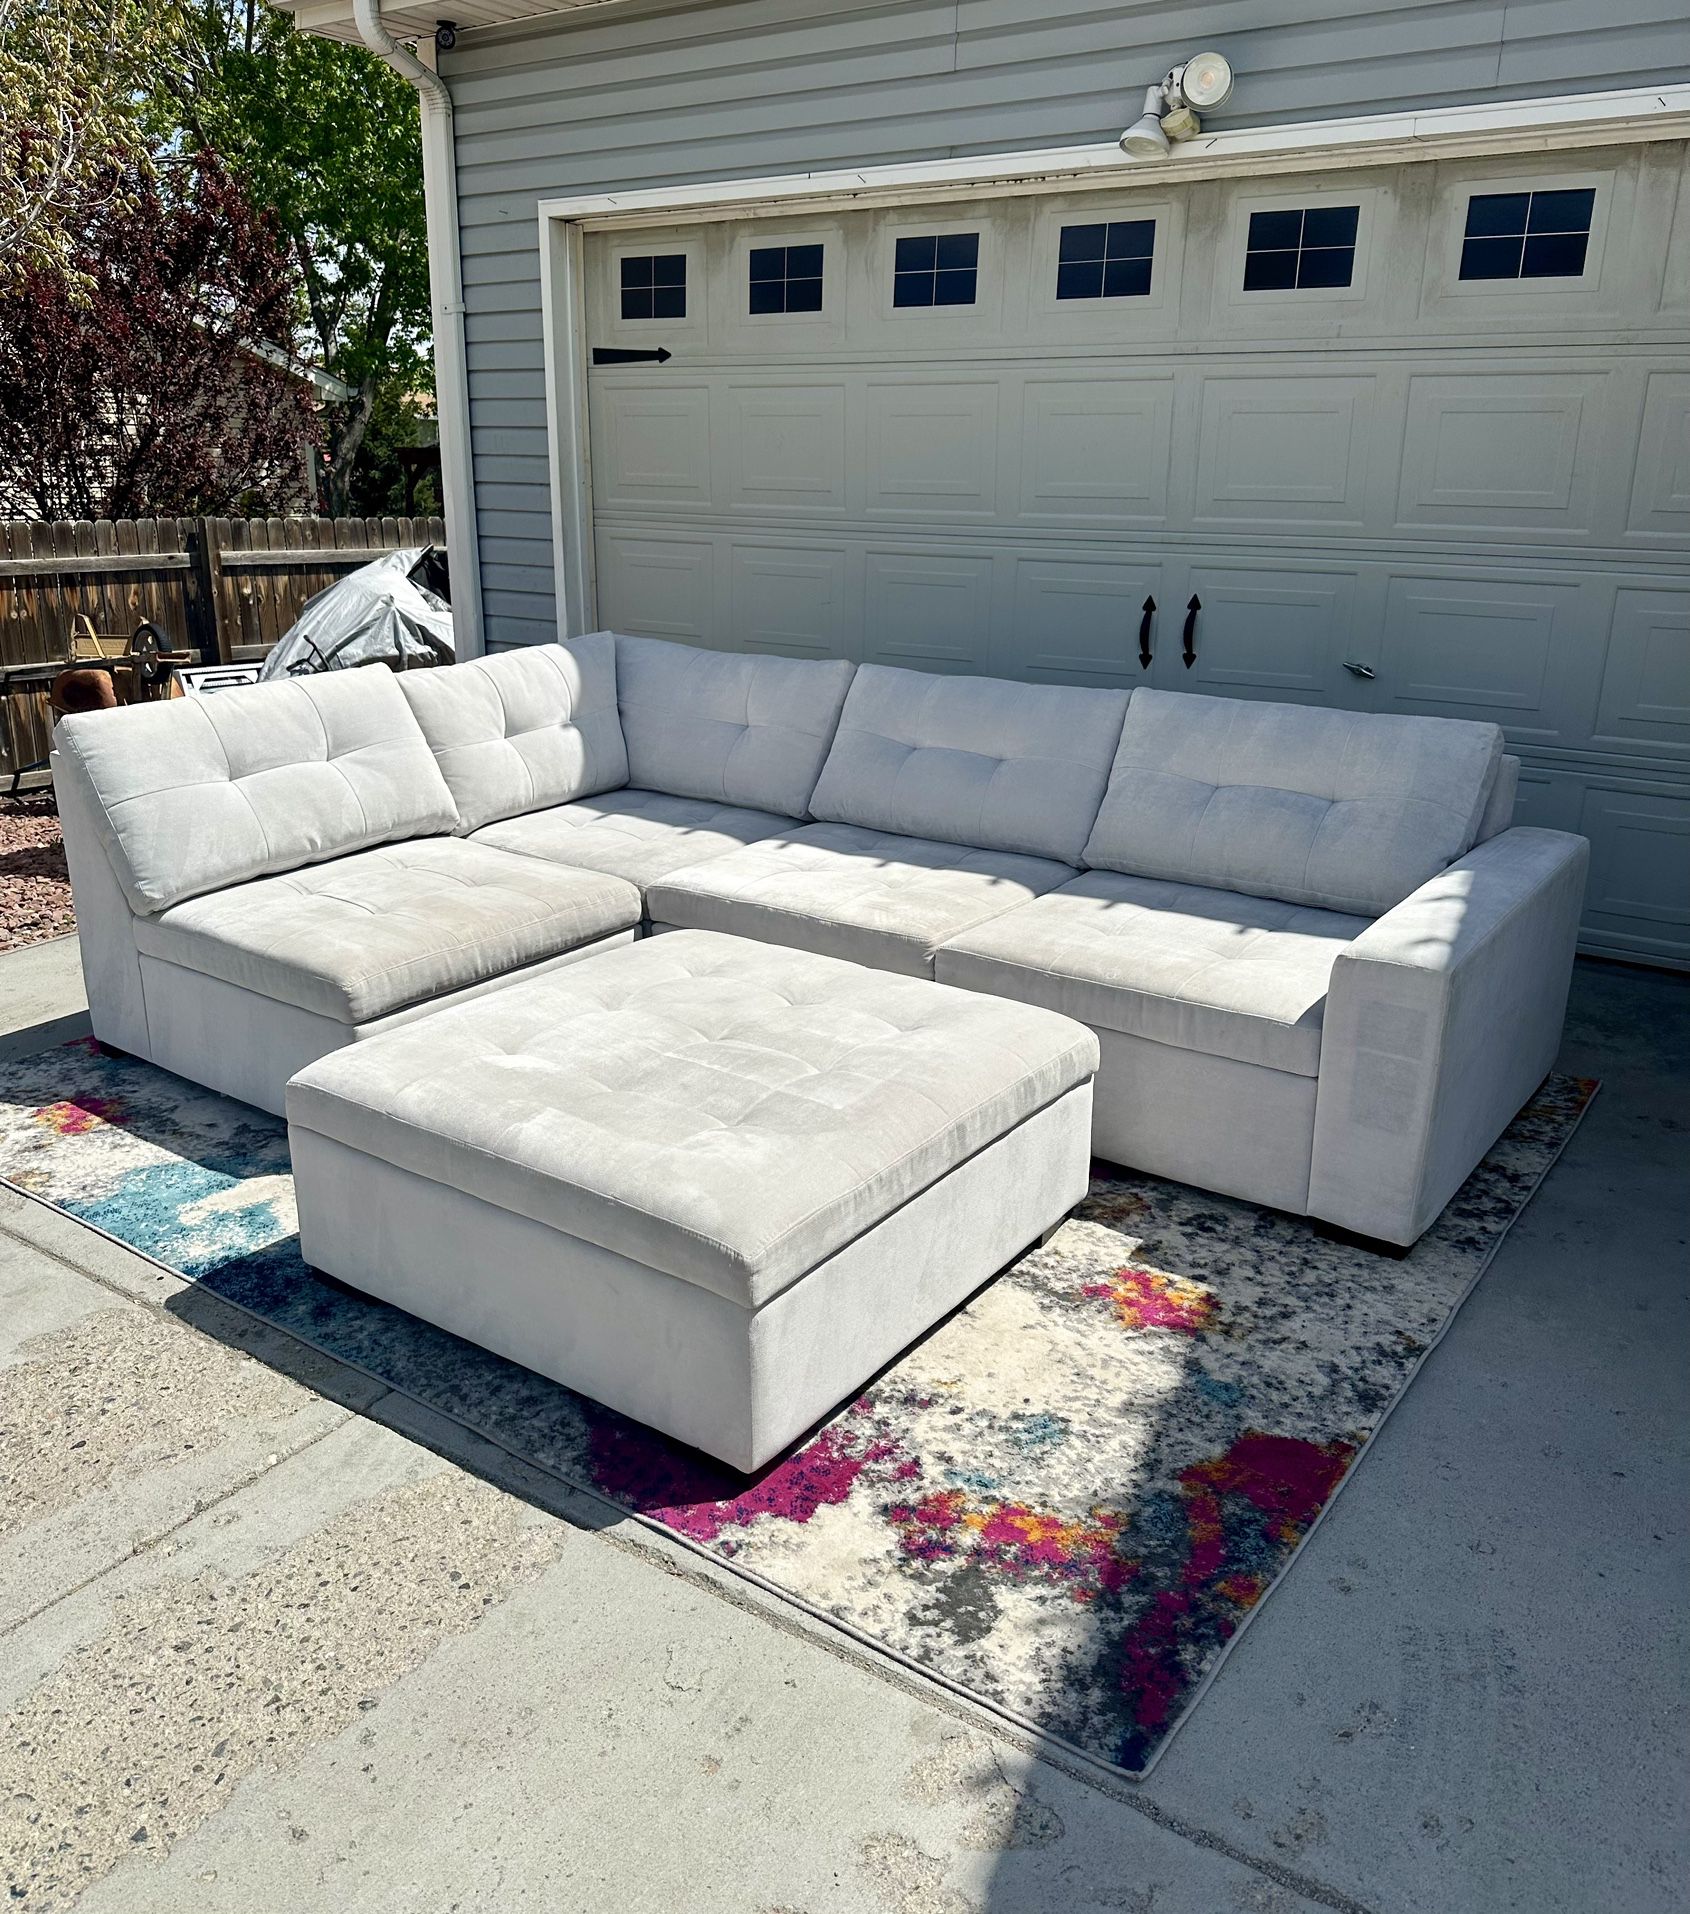 🚚 FREE DELIVERY ! Gorgeous White Sectional Sofa w/ Storage Ottoman